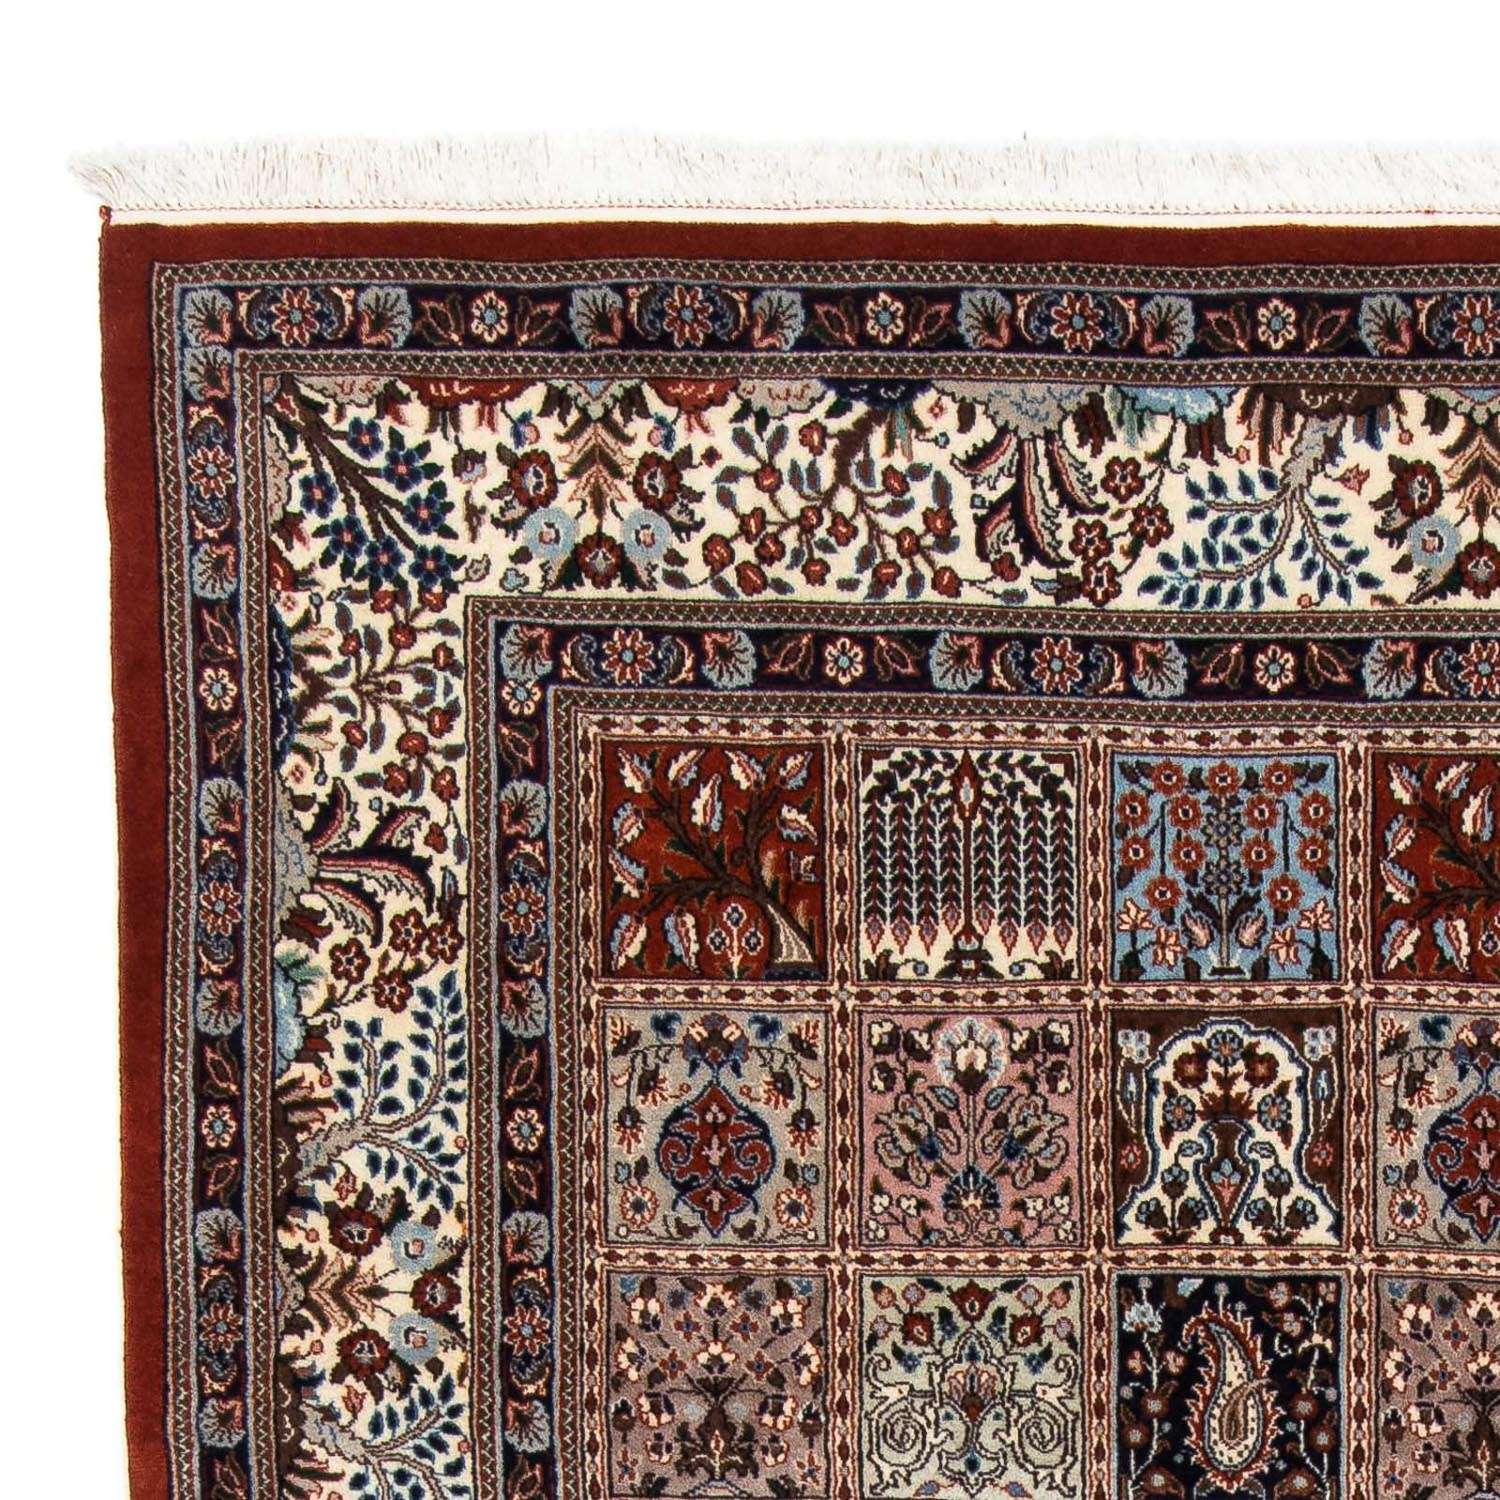 Persisk tæppe - Classic - 240 x 178 cm - flerfarvet